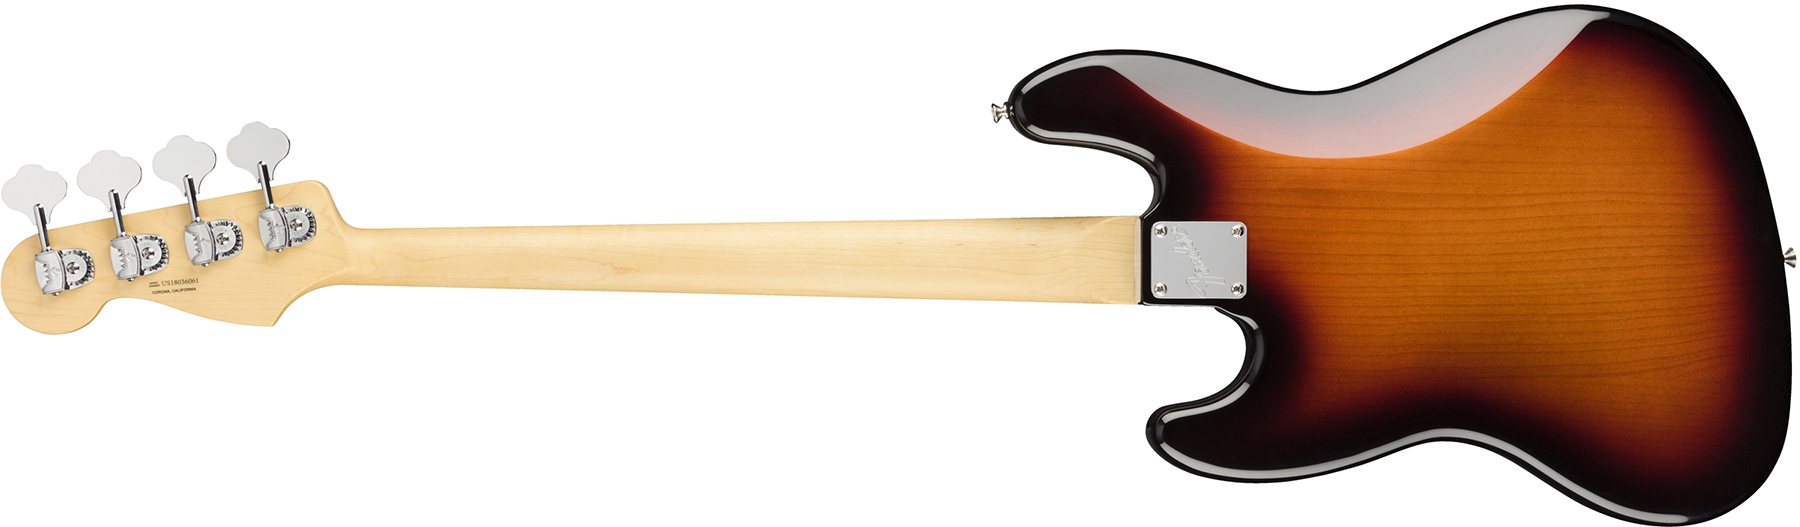 Fender Jazz Bass American Performer Usa Rw - 3-color Sunburst - Bajo eléctrico de cuerpo sólido - Variation 1